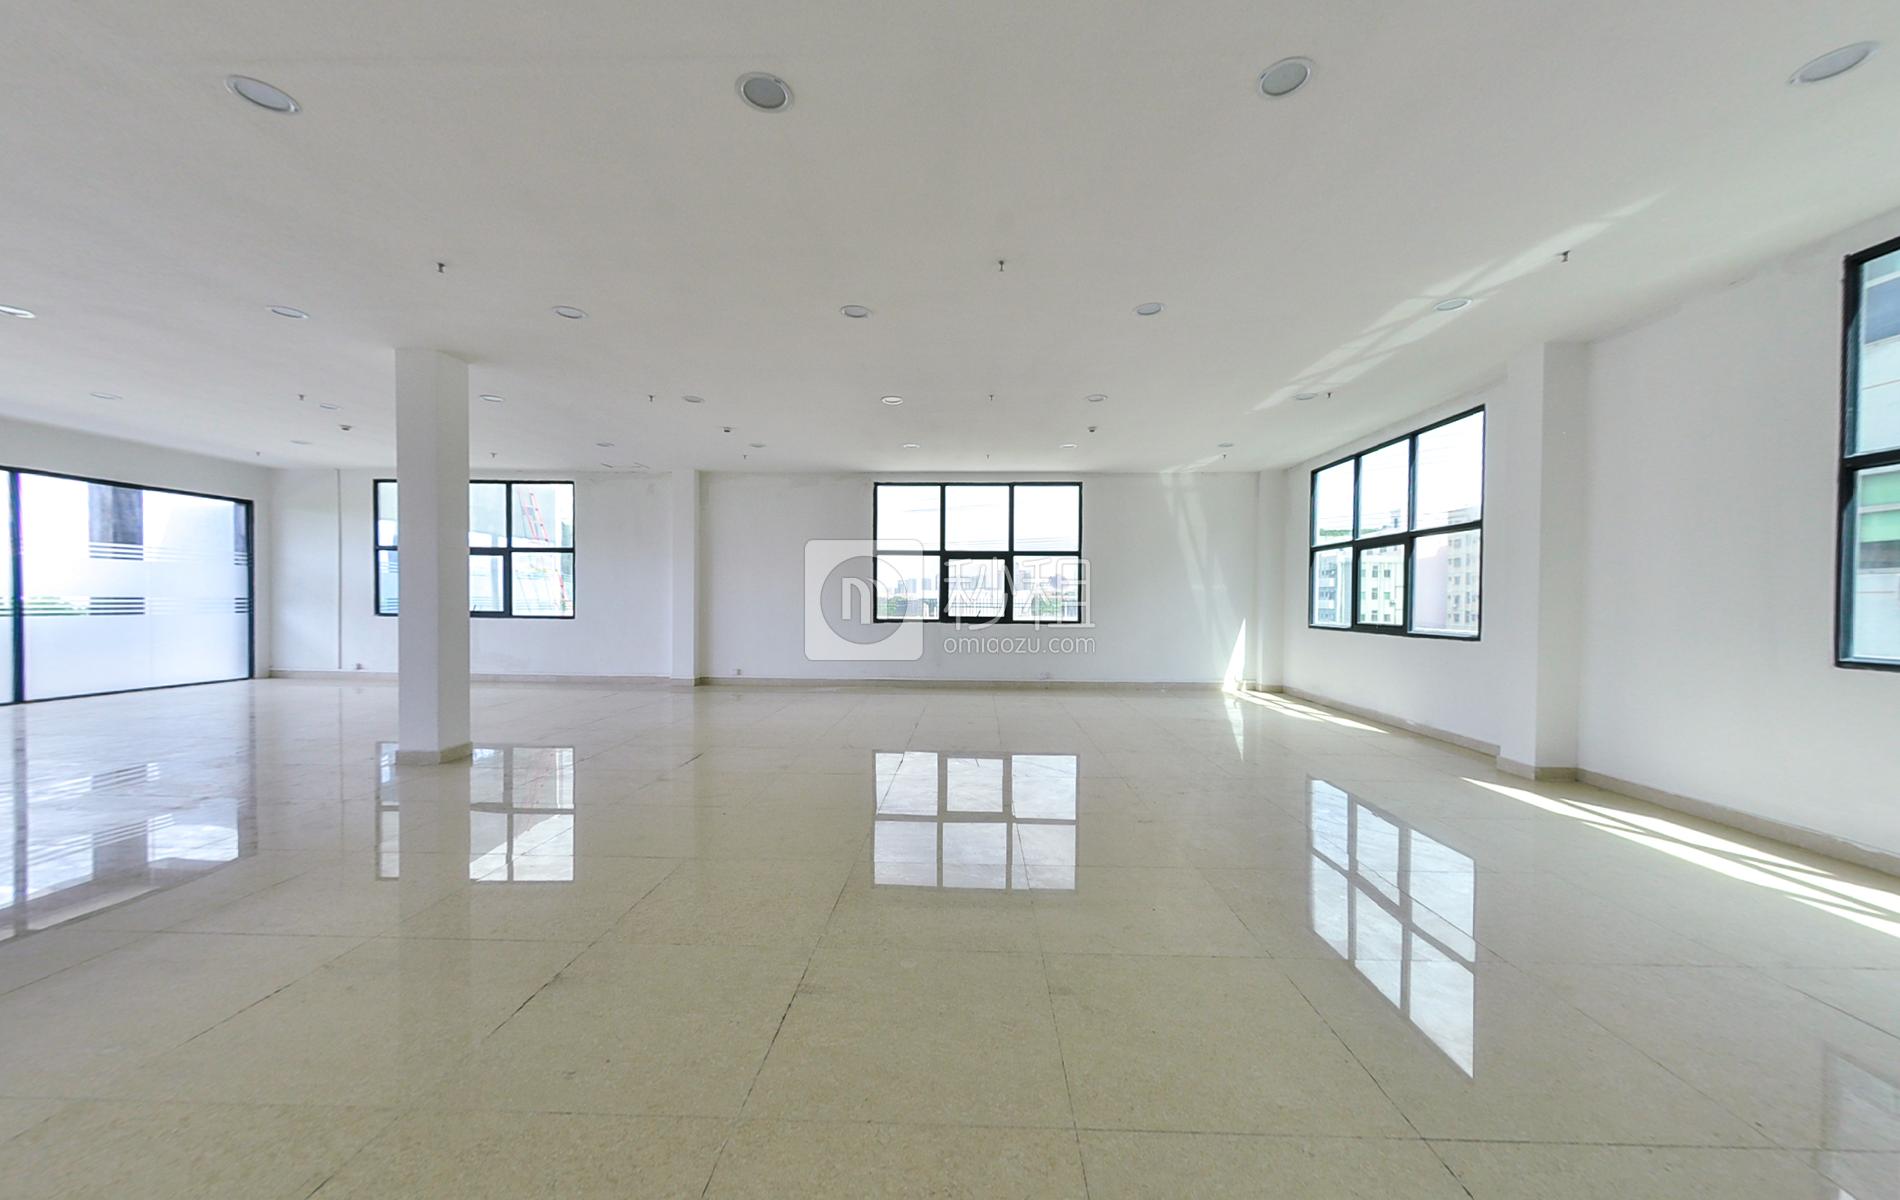 红湾商务大厦写字楼出租115平米简装办公室43元/m².月